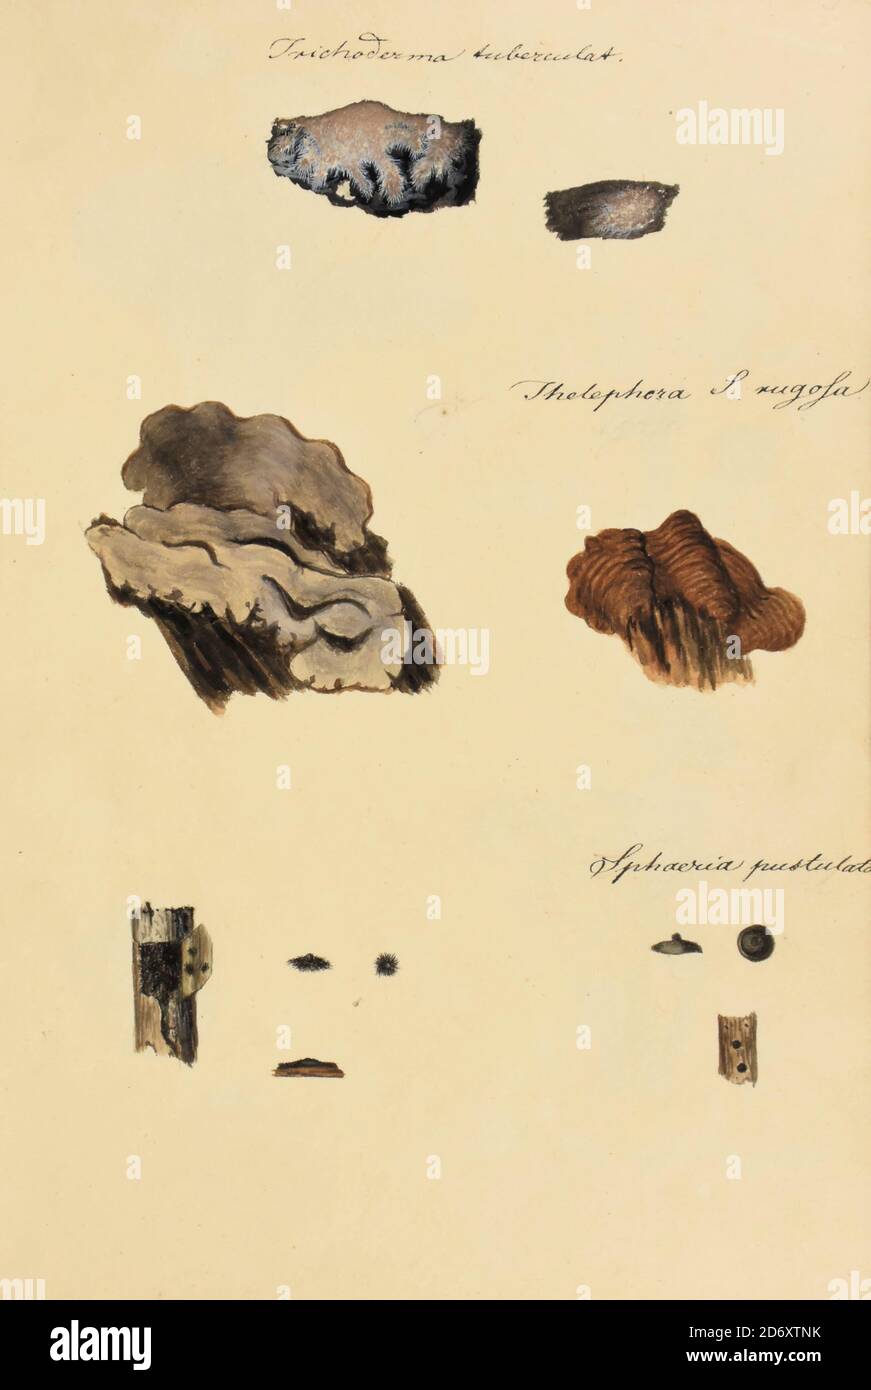 Illustrazione dipinta a mano di funghi nordamericani dal libro 'Icones fungorum Niskiensium' di Schweinitz, Lewis David von, 1780-1834 Data di pubblicazione 1805. Lewis David de Schweinitz (1834 febbraio 1780 – 8 febbraio 13) è stato un . È considerato da alcuni il 'padre di Mycologia nordamericana', ma ha anche dato contributi significativi alla botanica. Foto Stock